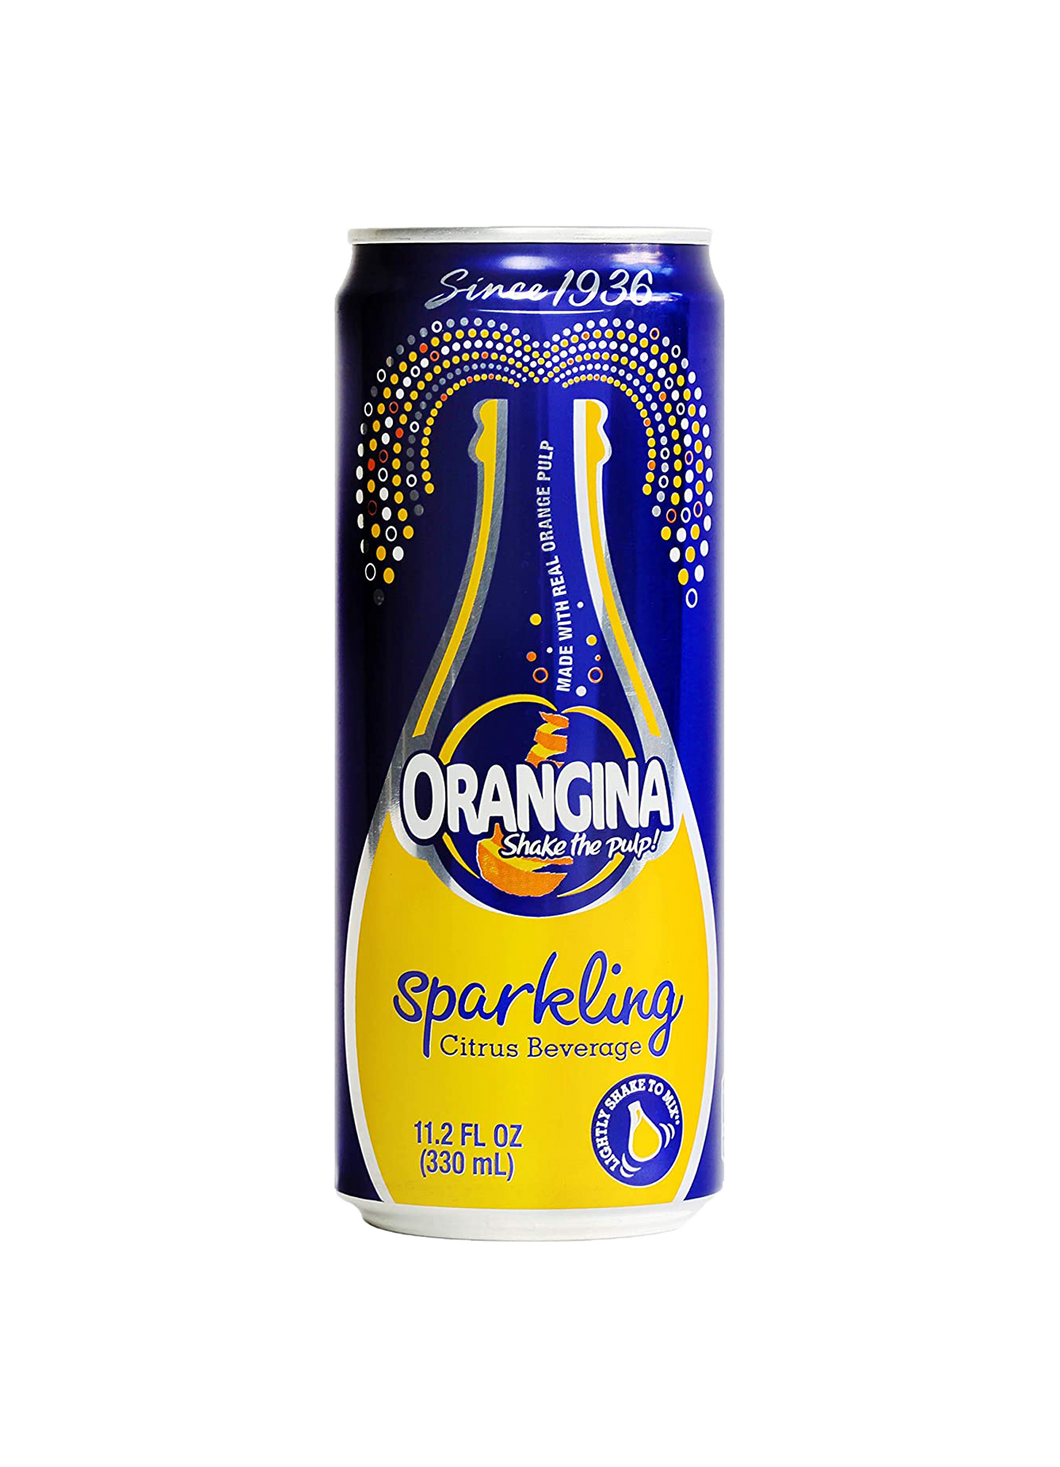 Orangina Sparkling Citrus Beverage 330ml